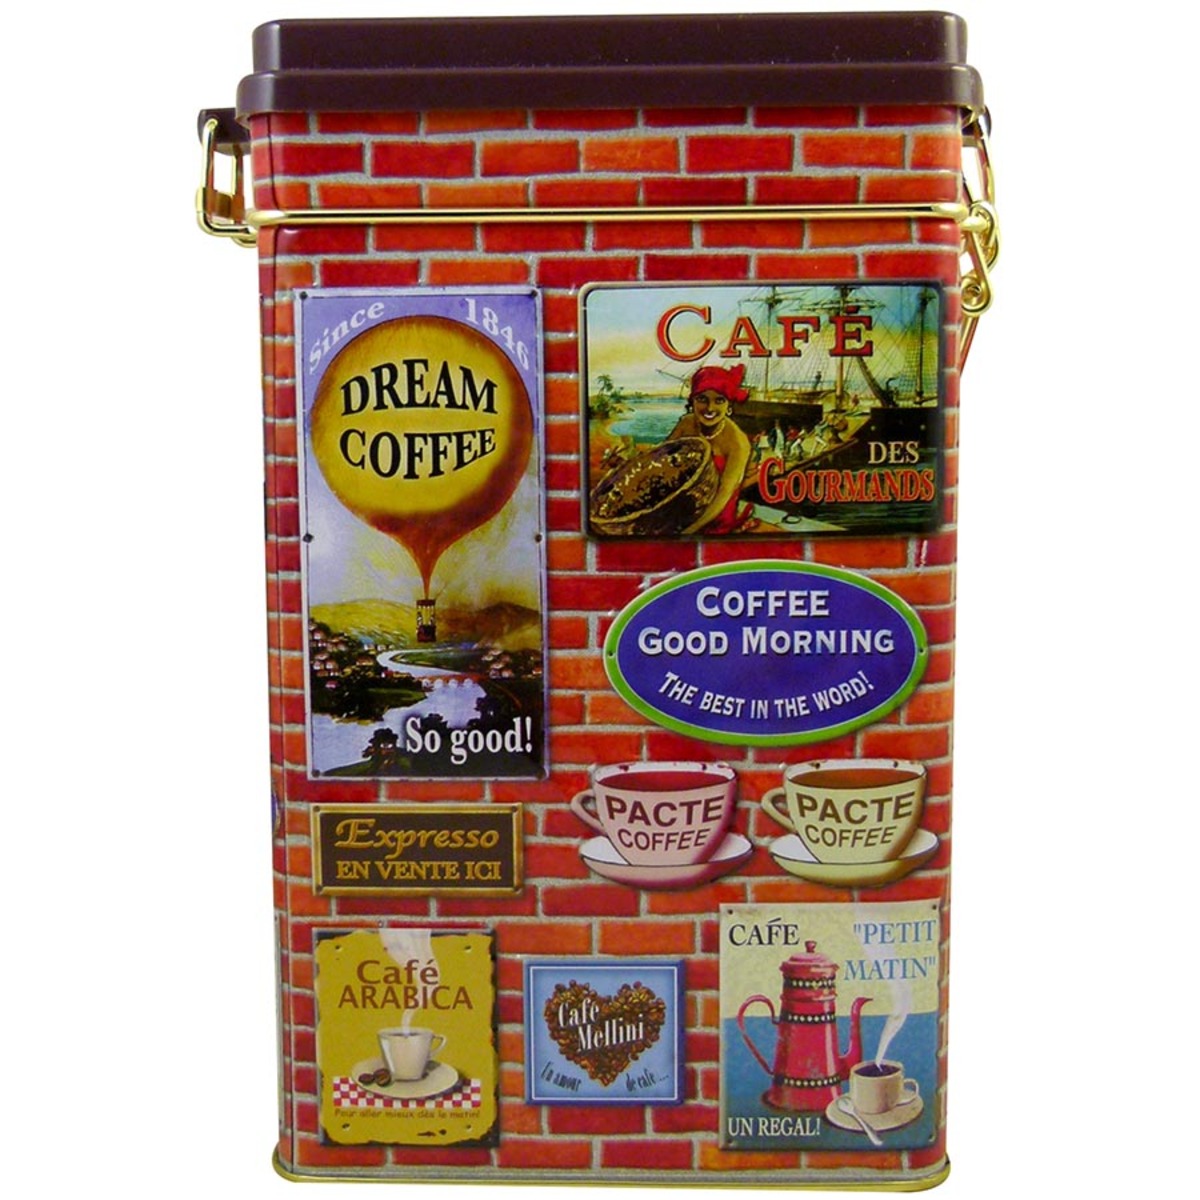 Boîte hermétique en métal pour le café au décor rétro mur de briques et affiches publicitaires en relief